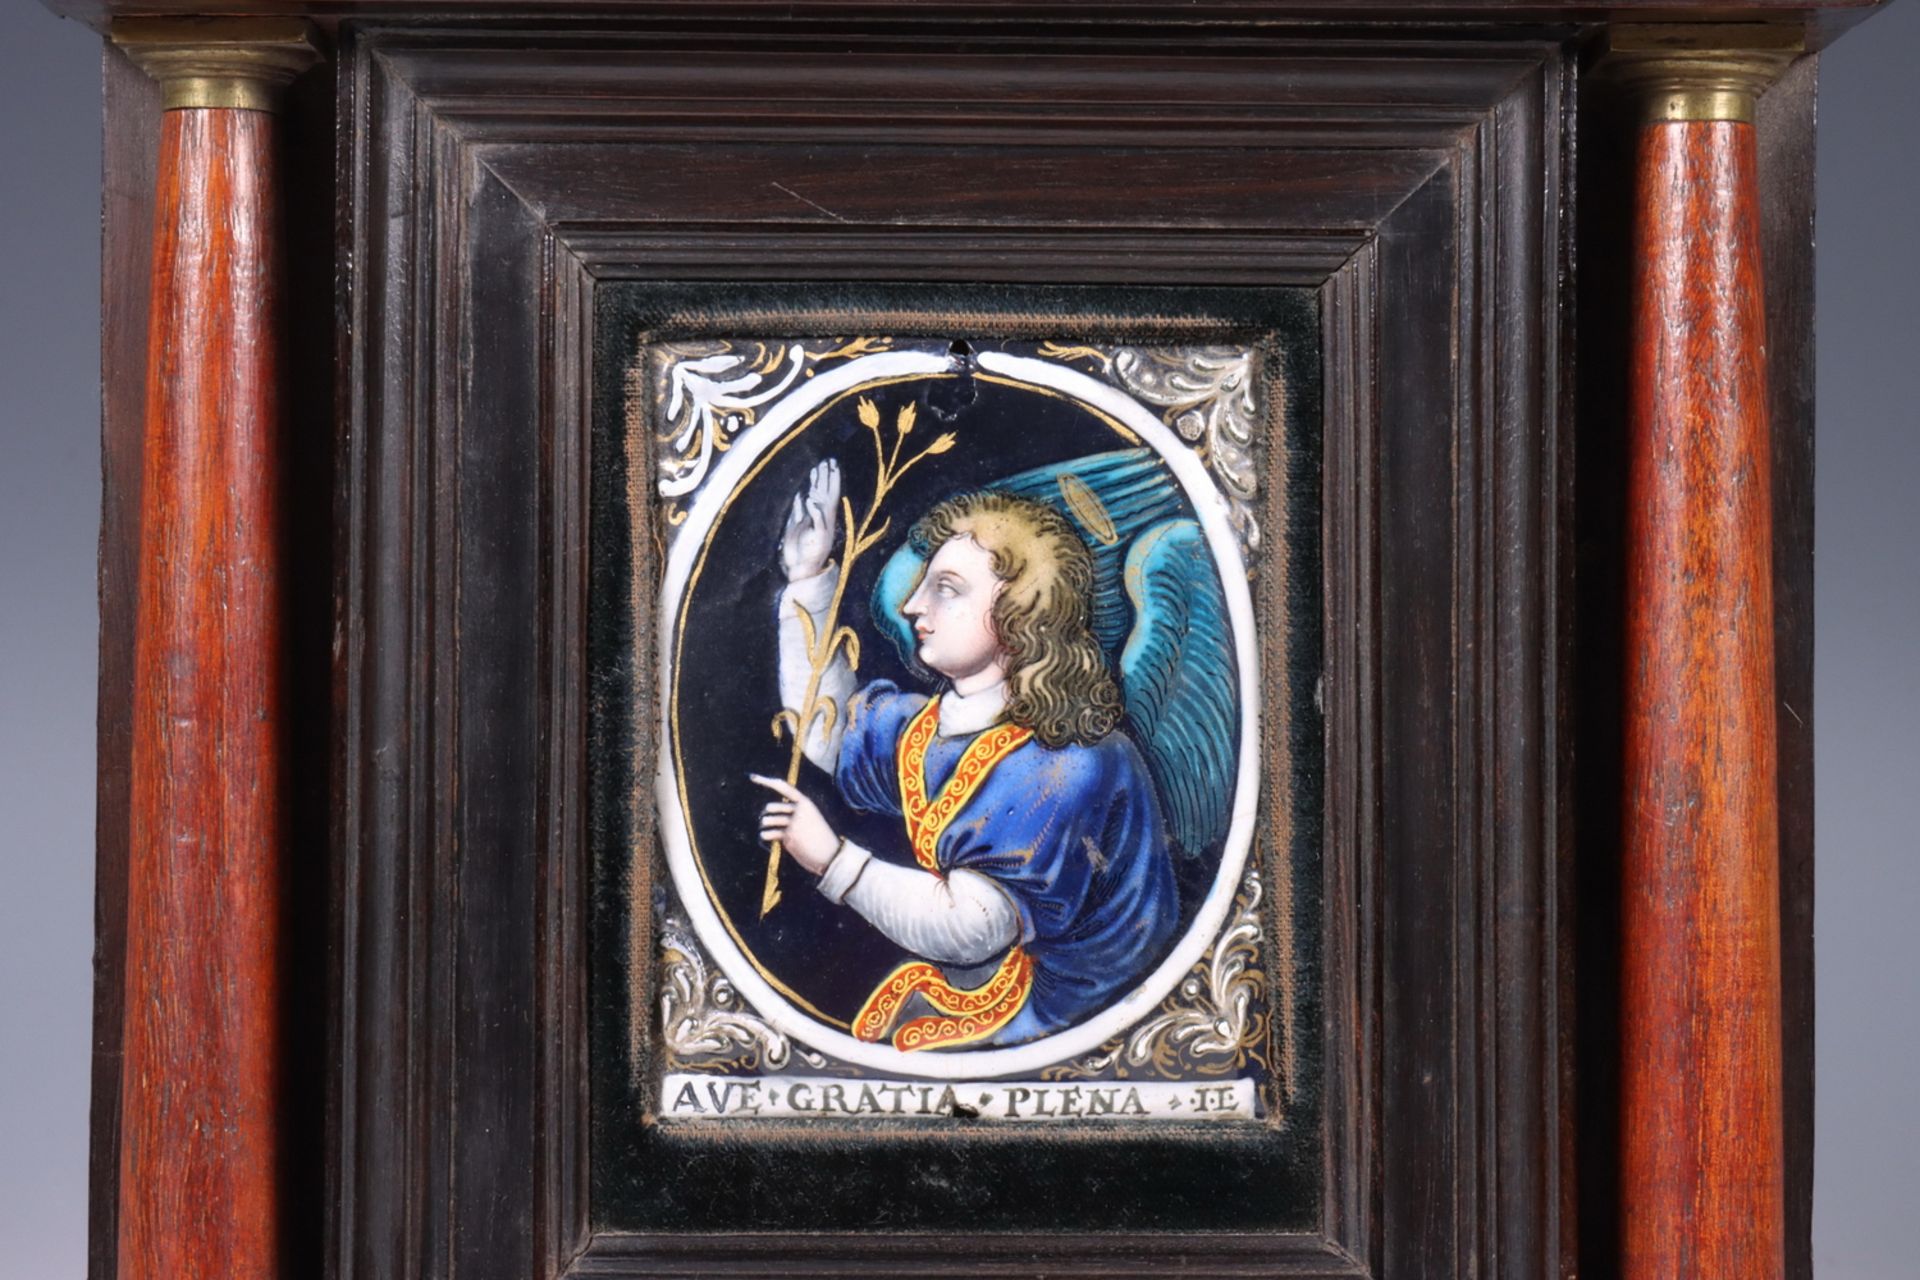 Limoges, emaille plaquette 'Ave Gratia Plena Il', Laudin, ca. 1700, - Bild 2 aus 3